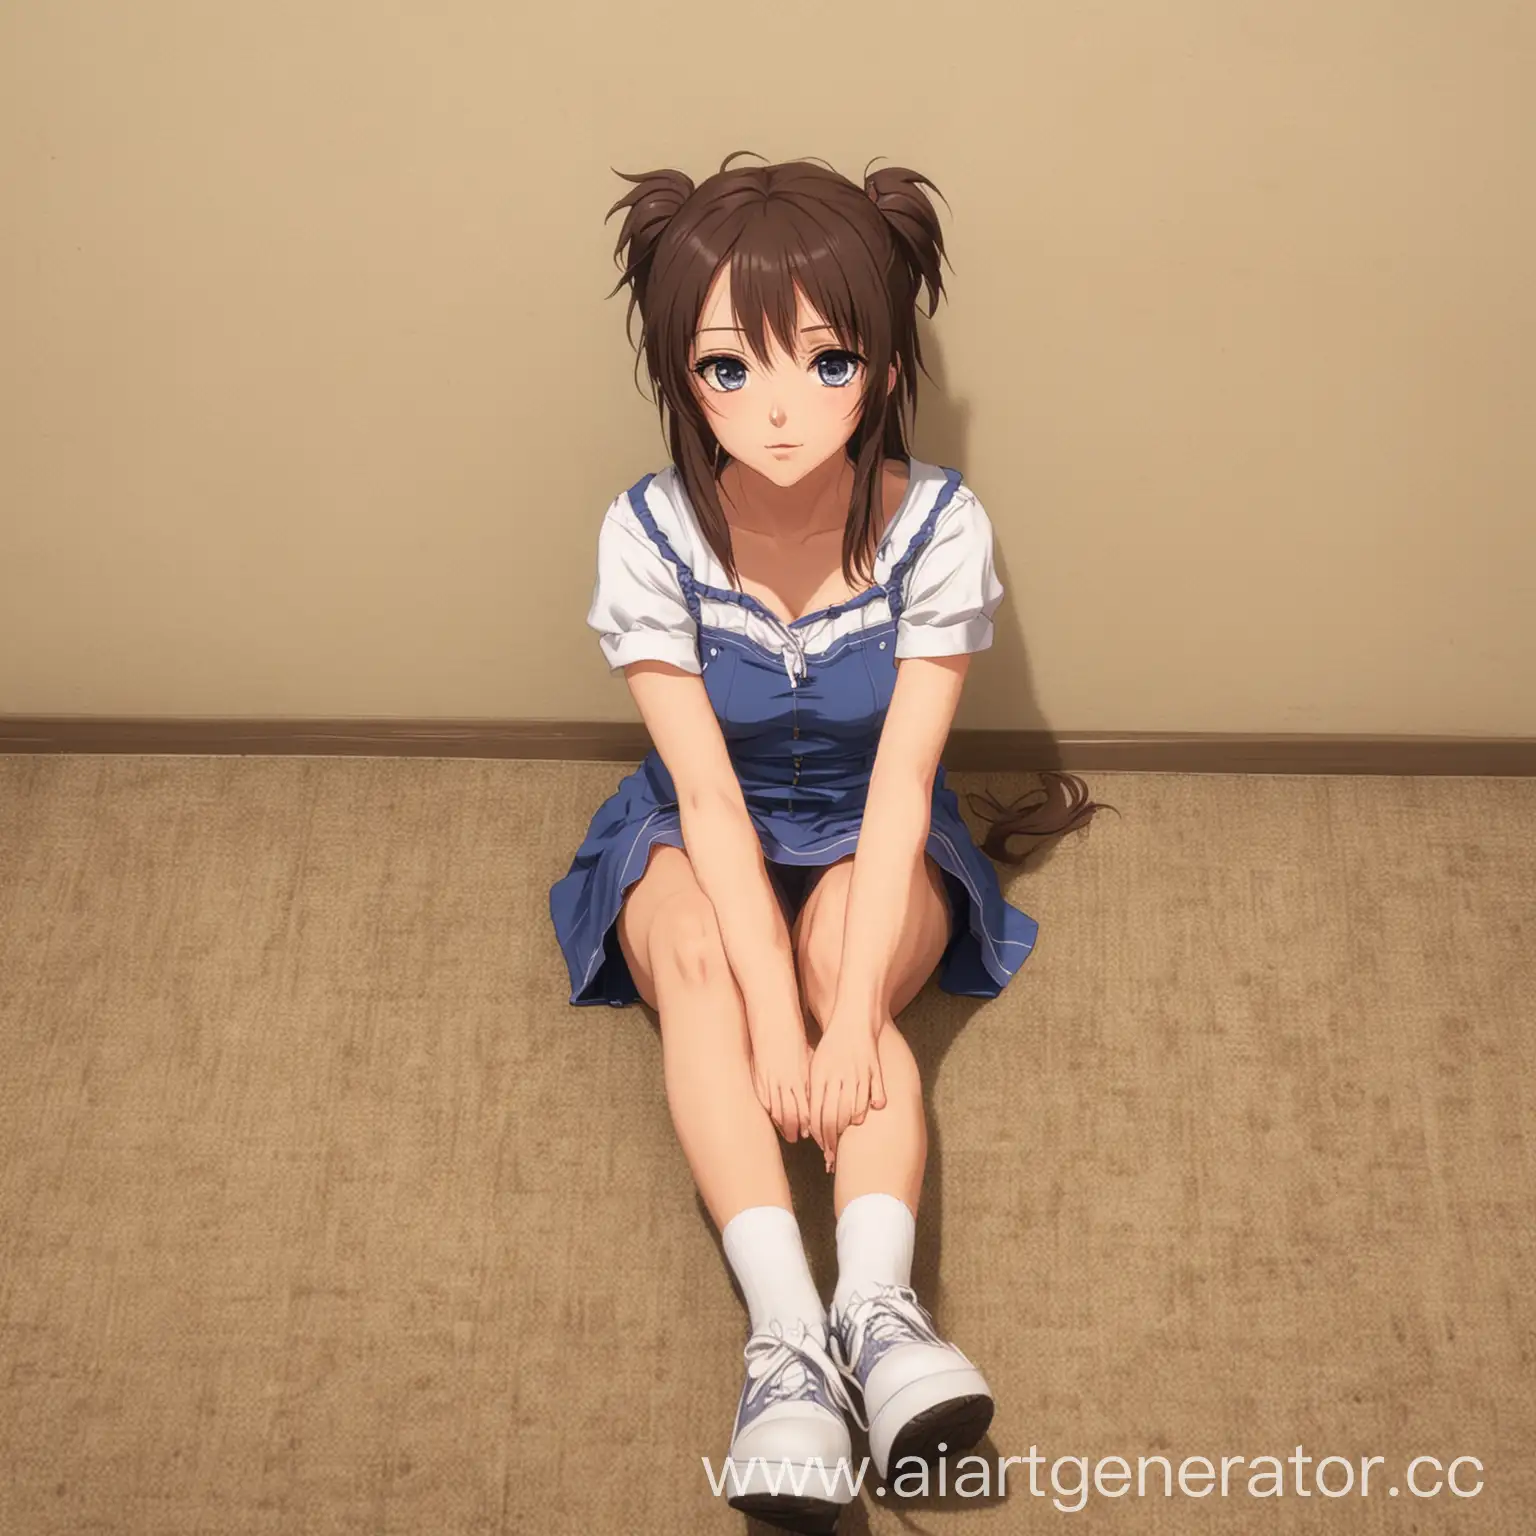 аниме девушка сидит на полу в полный рост